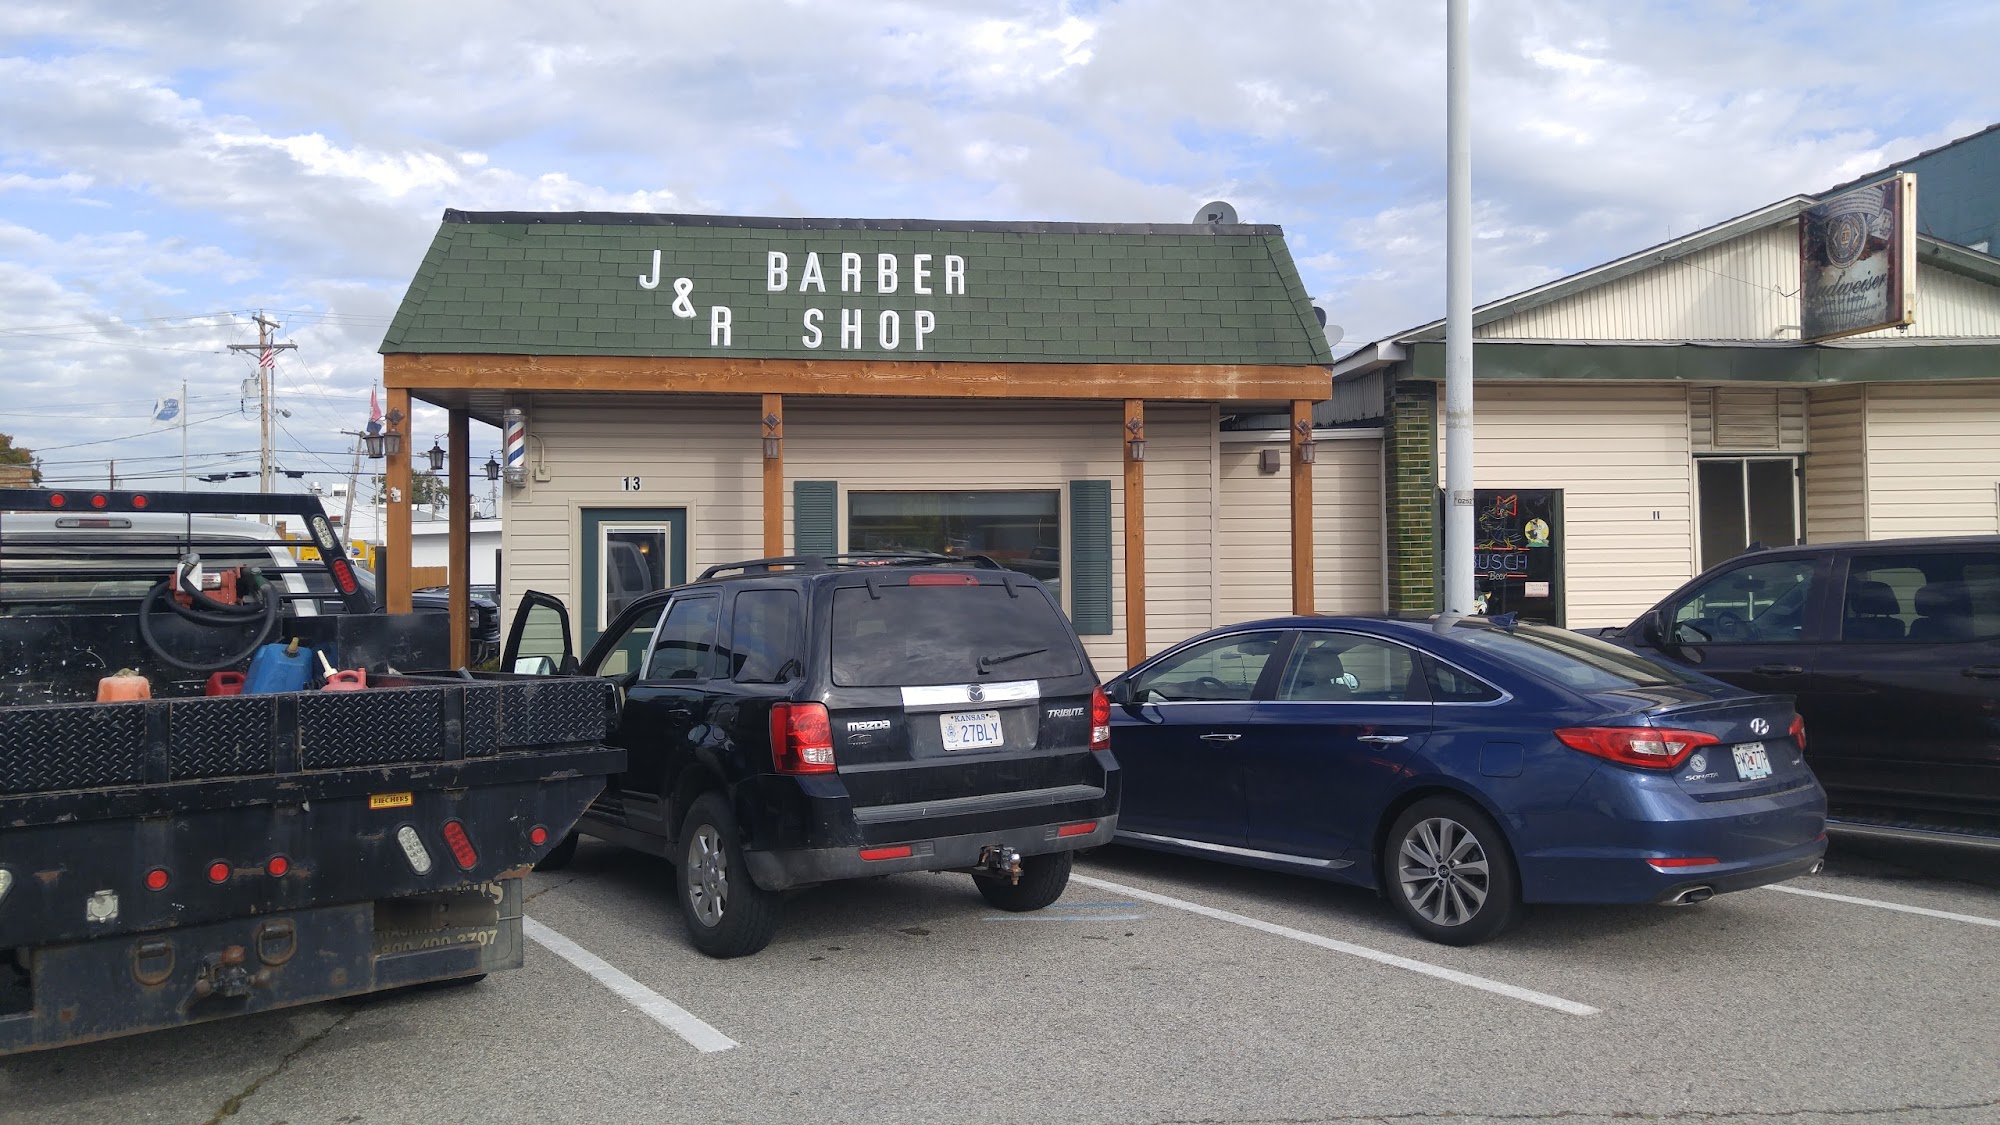 J & R Barber Shop